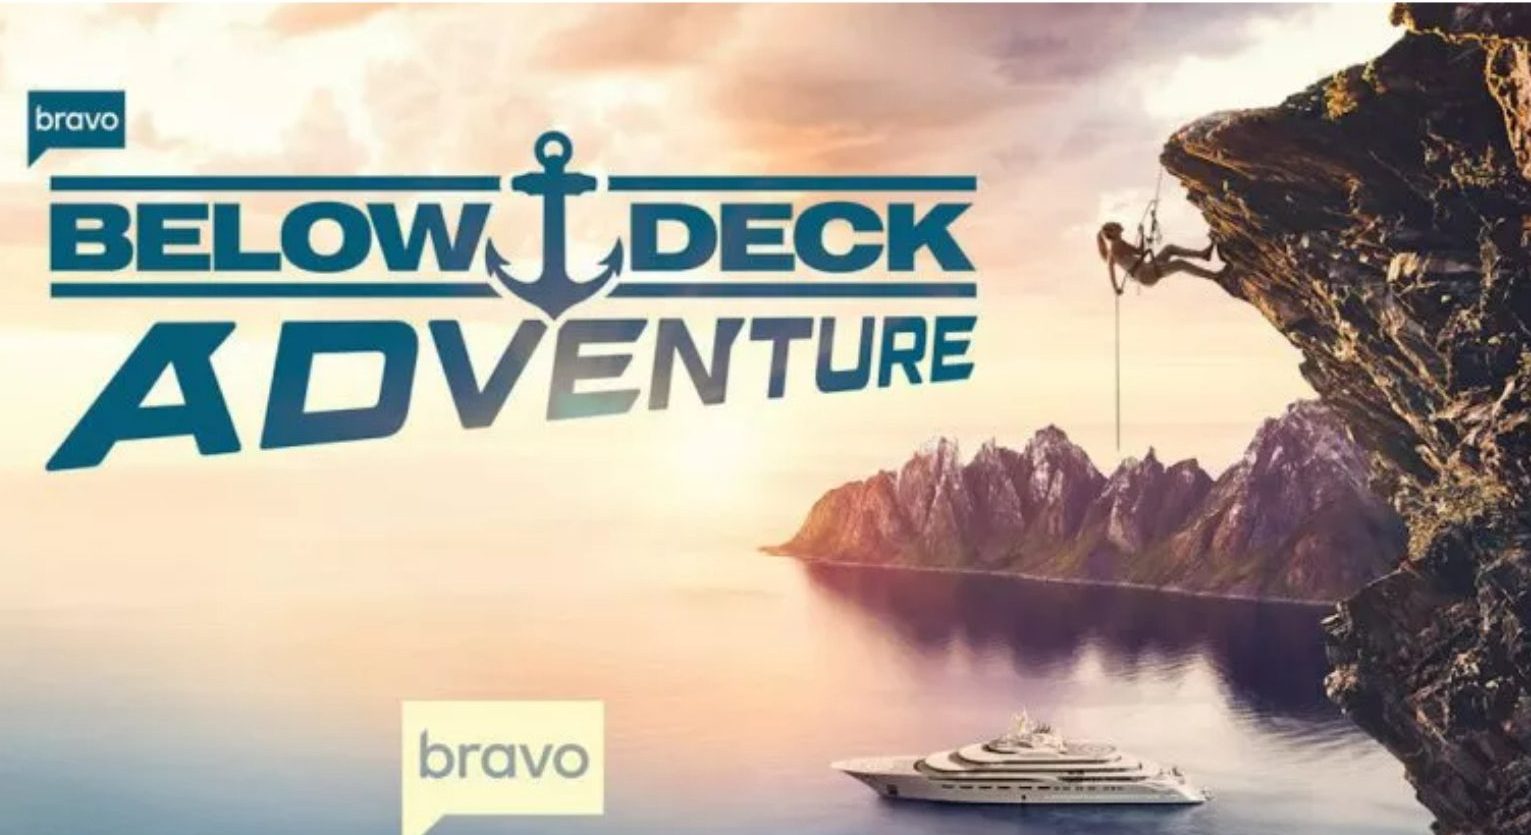 Below Deck Adventure Episode 2 Release Date